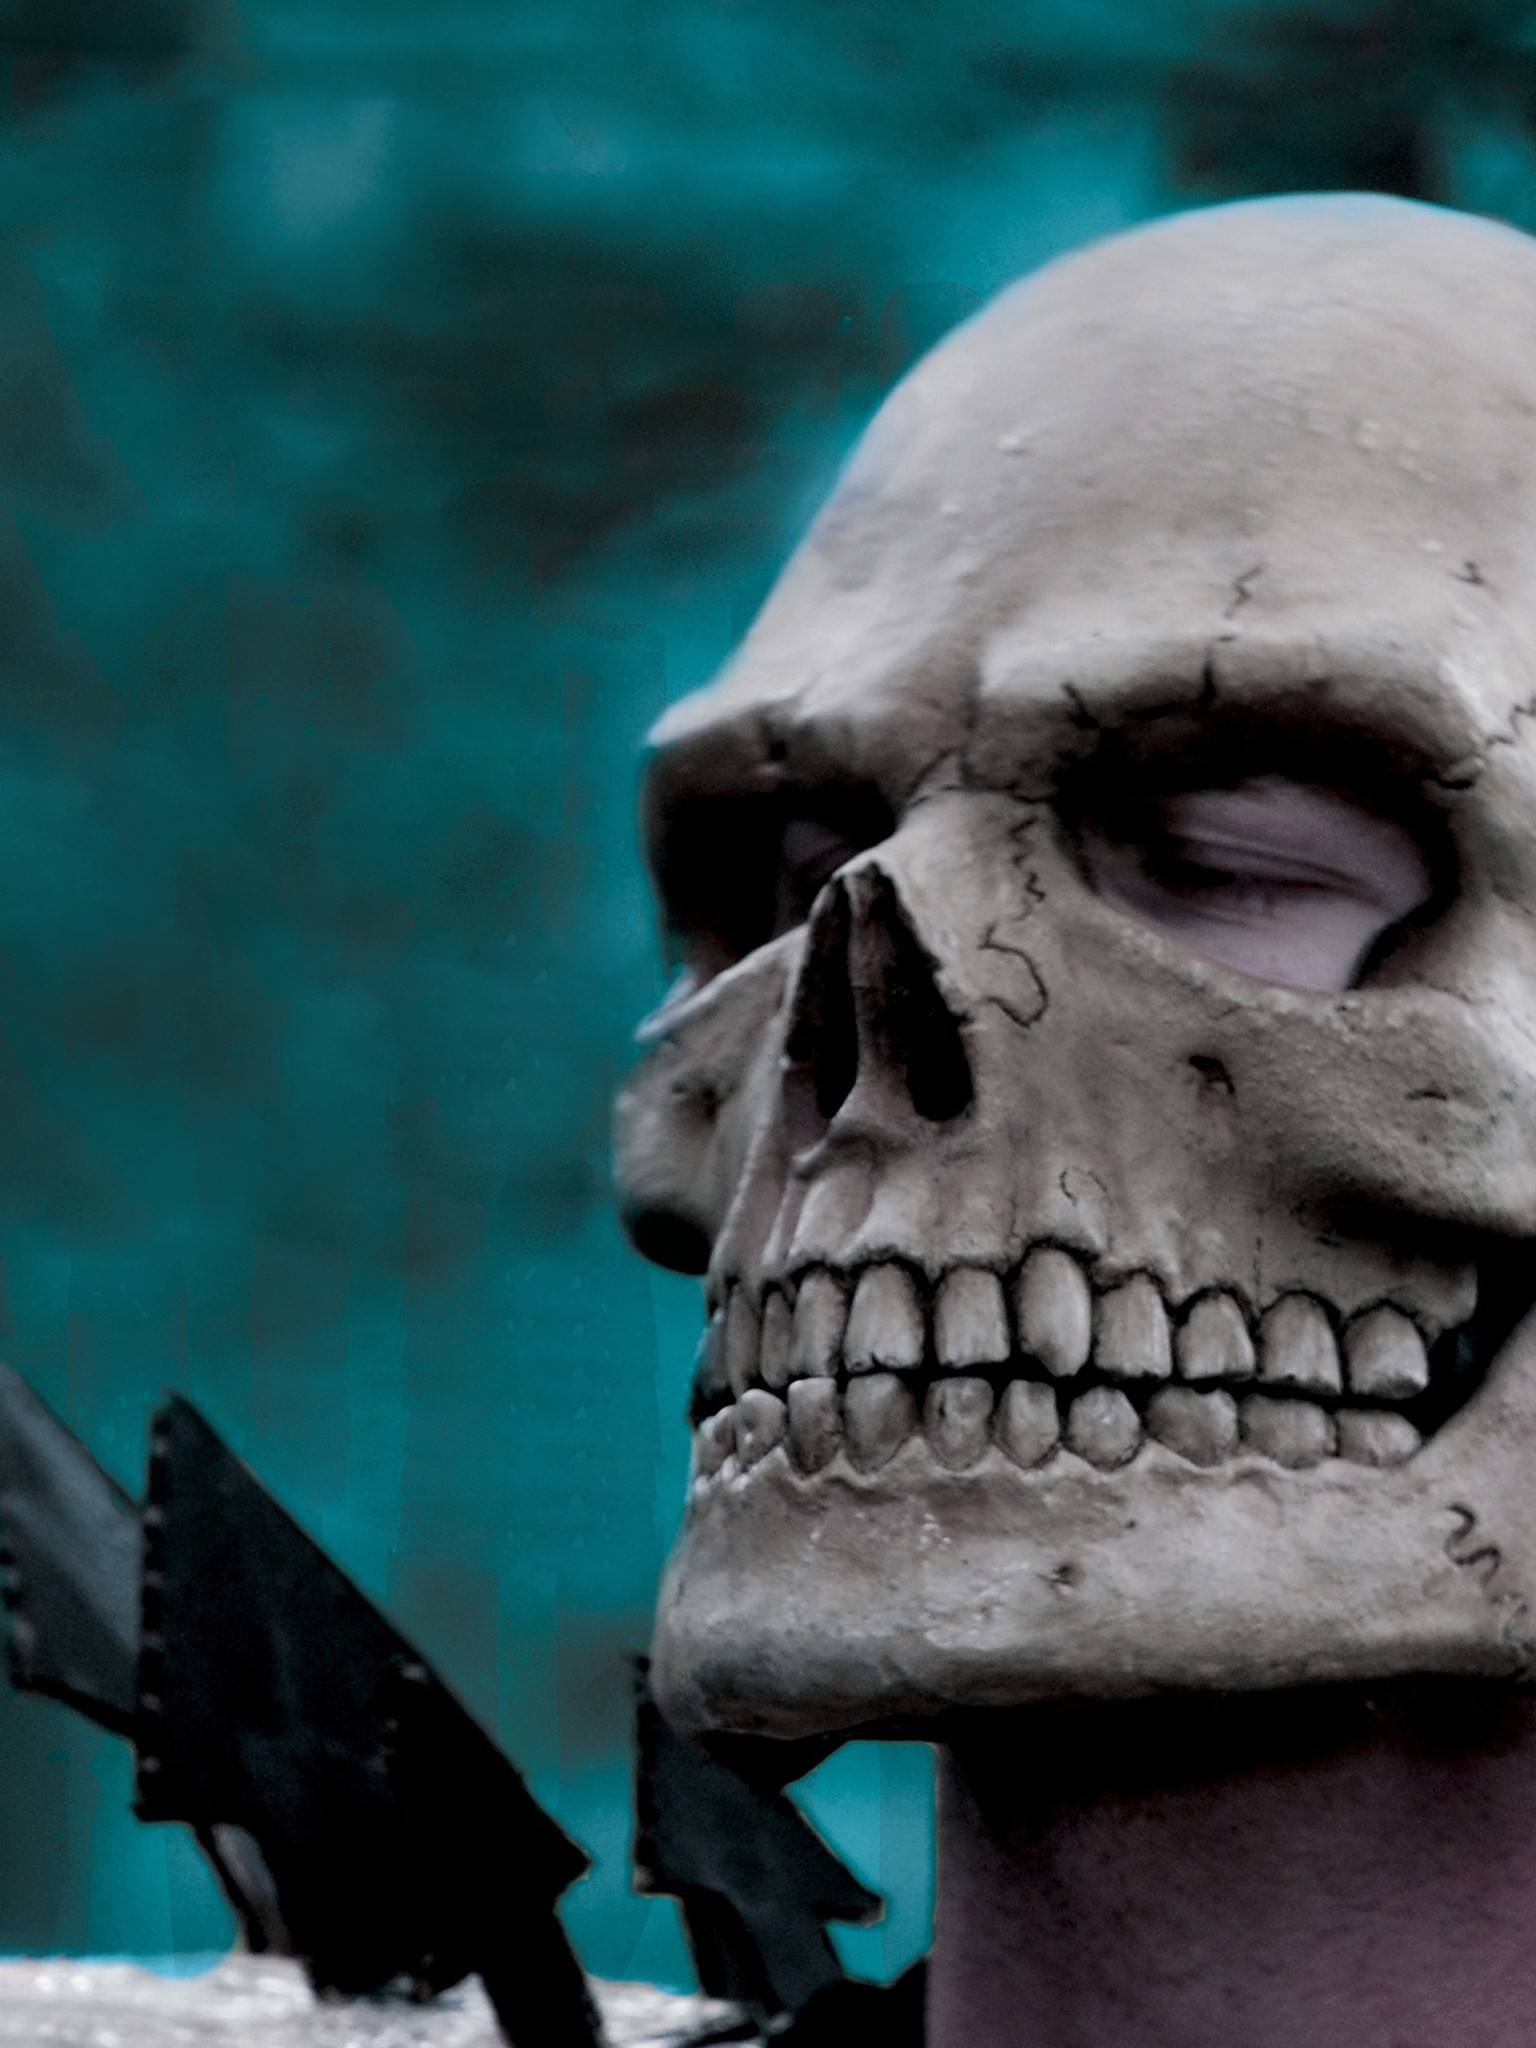 The Skulls - Rotten Tomatoes